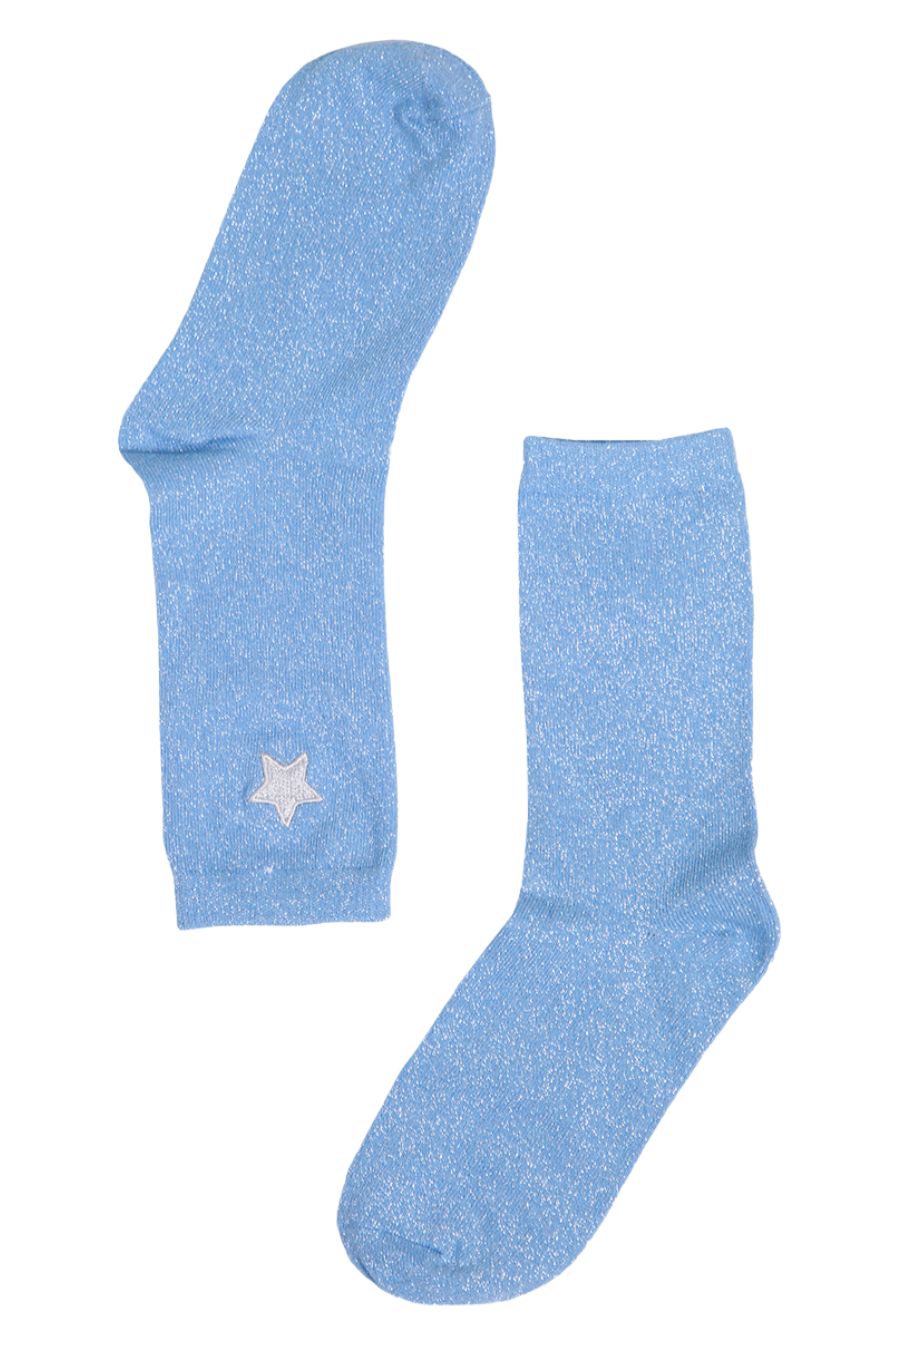 Womens Glitter Socks Embroidered Star Ankle Socks Sparkle Shimmer Blue